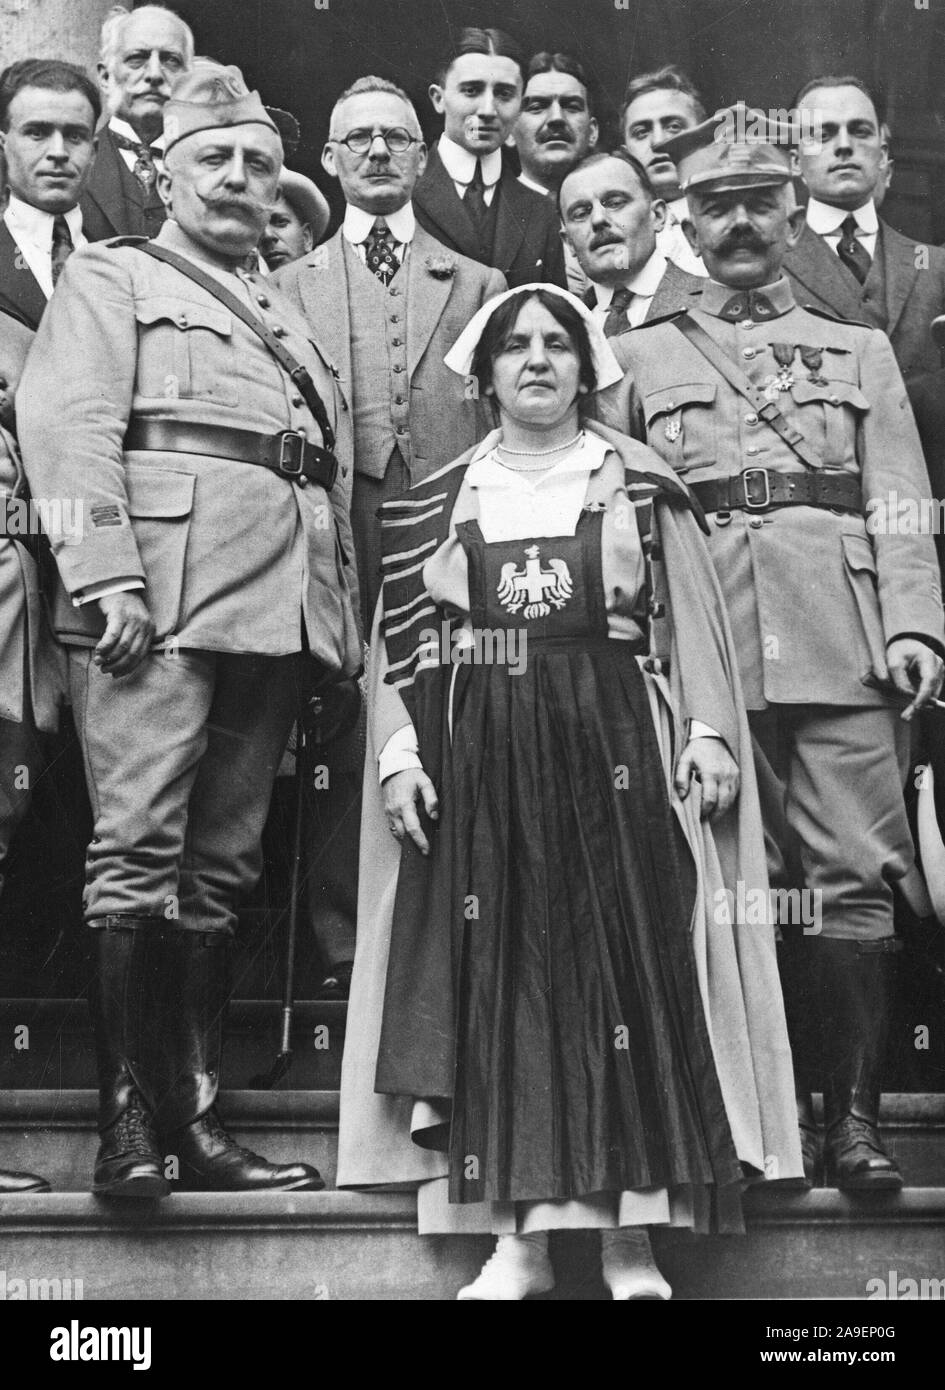 Tag der Unabhängigkeit, 1918 - Polen gewinnt Award für Juli vierter angezeigt. Polen war das erste Auszeichnung, eine Goldmedaille von der Stadt New York vorgelegt, der die beste Vertretung im Viertel der Juli Parade in der Stadt gemacht. Stockfoto